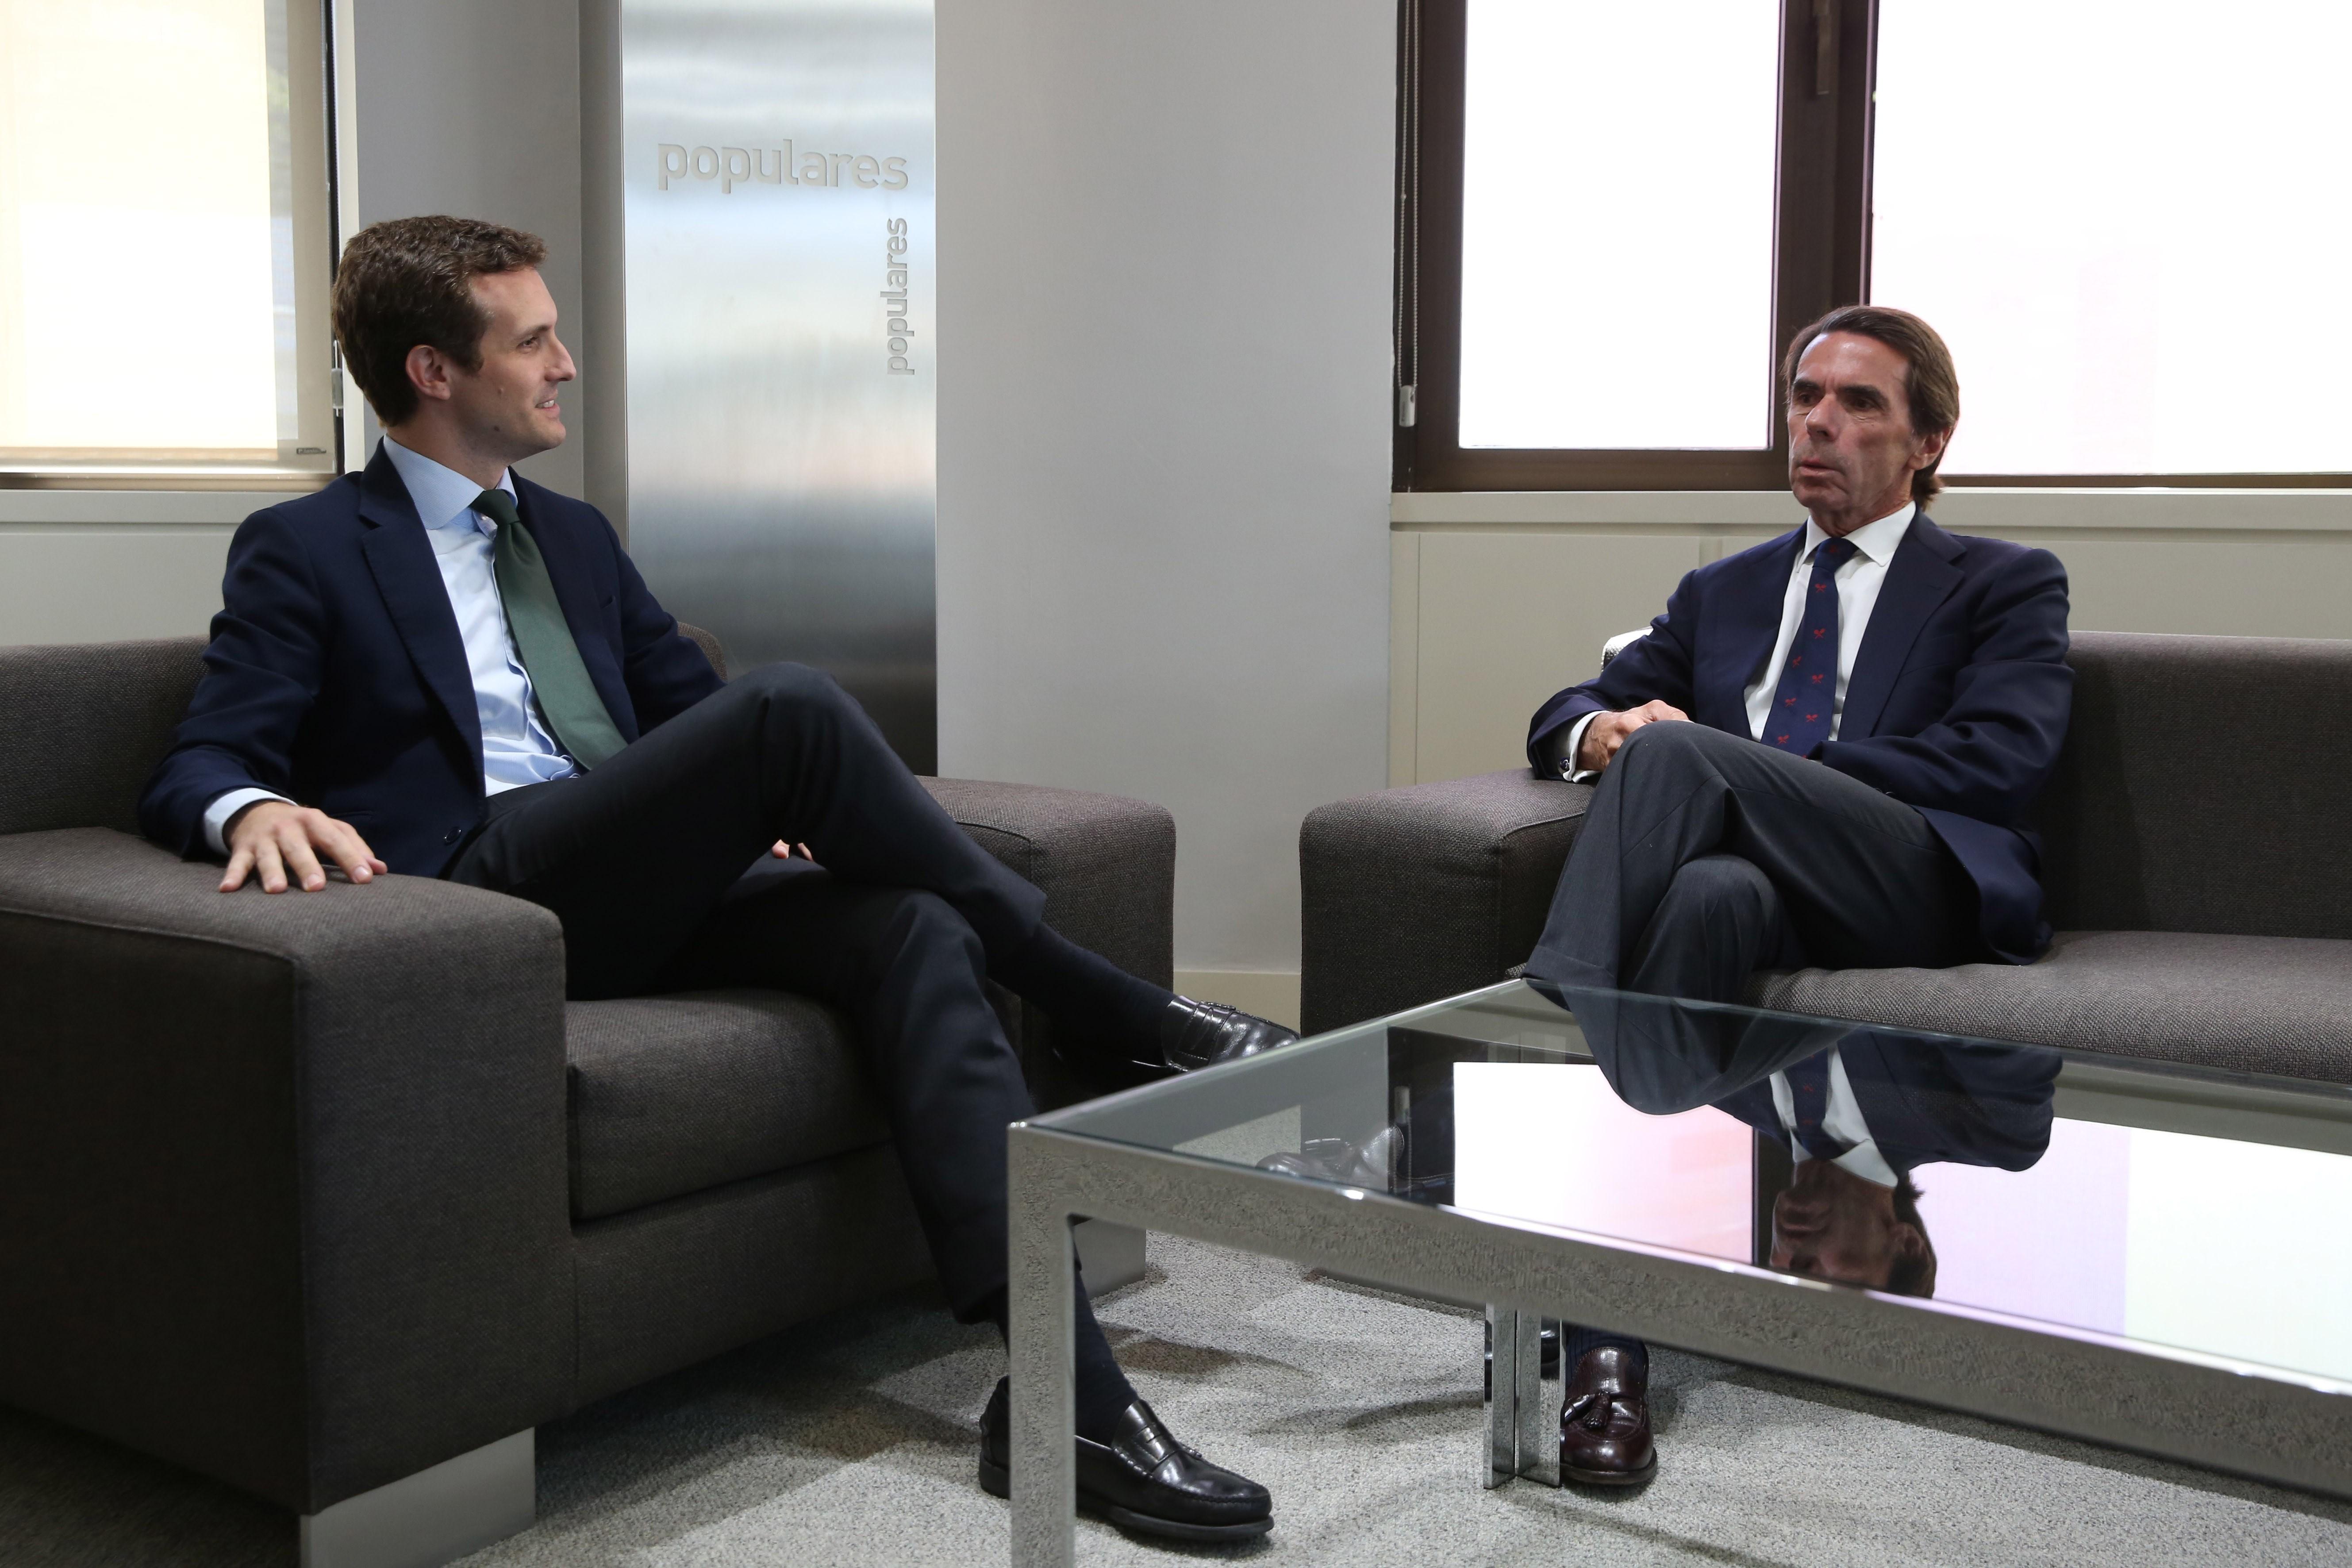 El PP veu "futur" després de la reunió entre Casado i Aznar